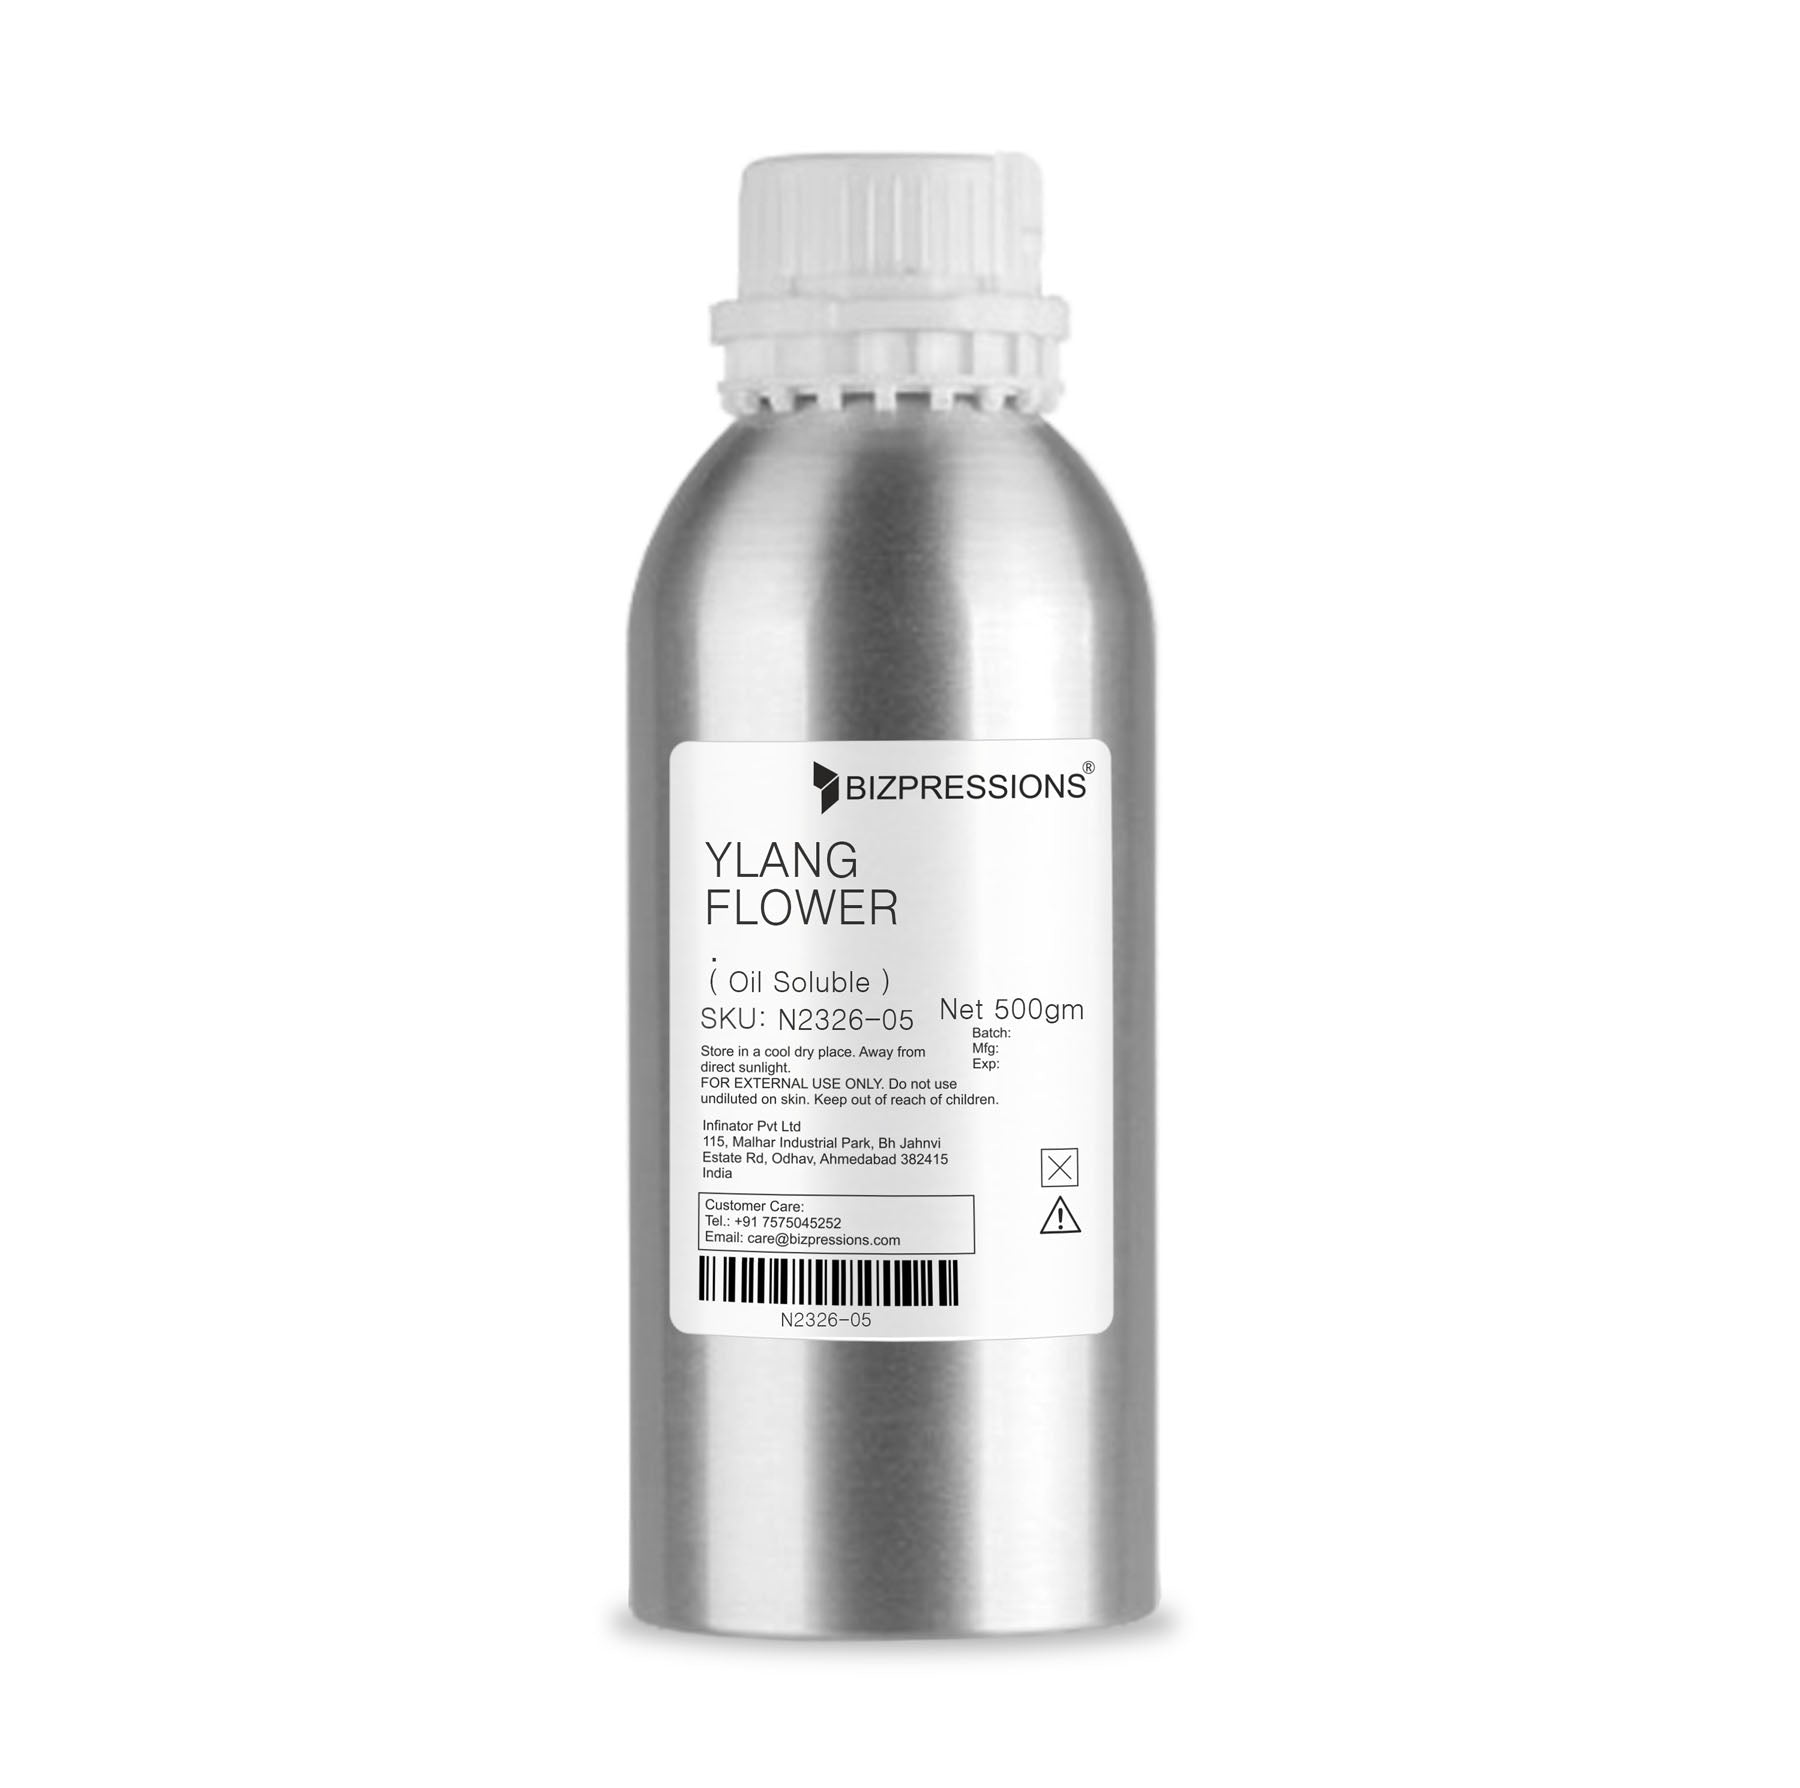 YLANG FLOWER - Fragrance ( Oil Soluble ) - 500 gm